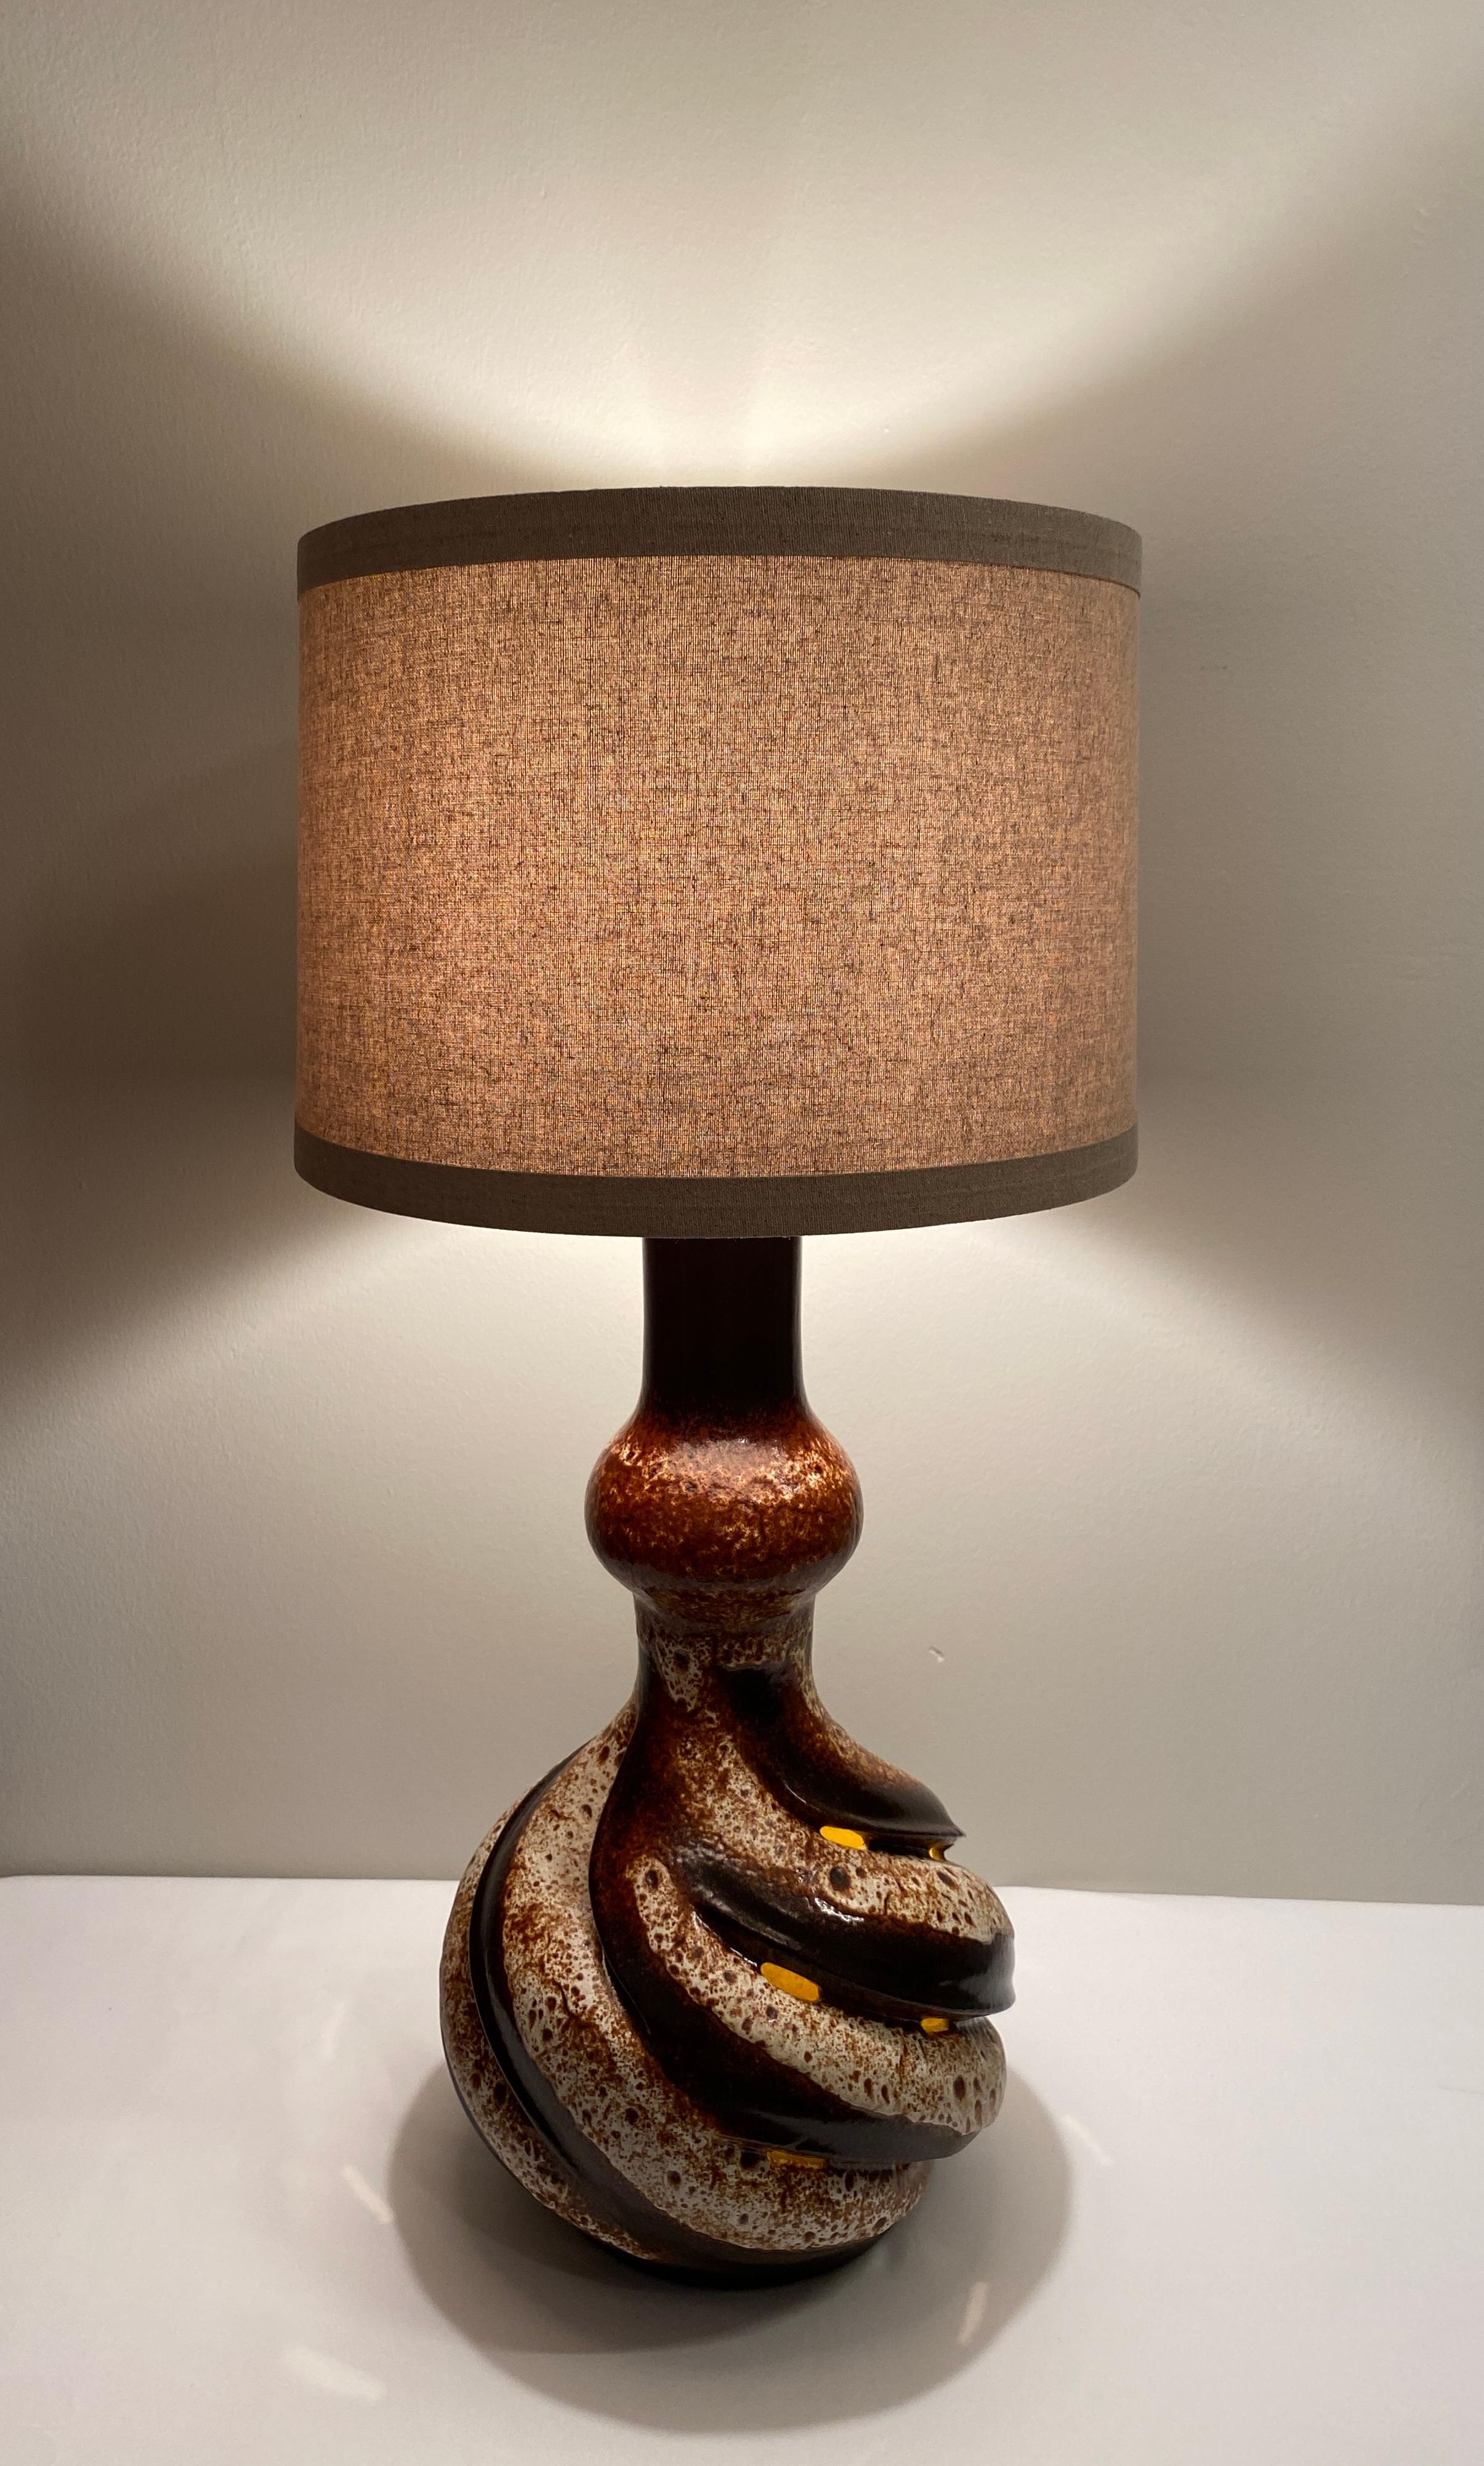 Große und sehr dekorative Tischlampe aus Vallauris, Frankreich. Sehr attraktiv Mitte des Jahrhunderts moderne Keramik-Tischlampe mit neutralen Farben und Form. Diese Lampe hat eine bemerkenswerte skulpturale Arbeit.

Der in gedämpftem Beige und